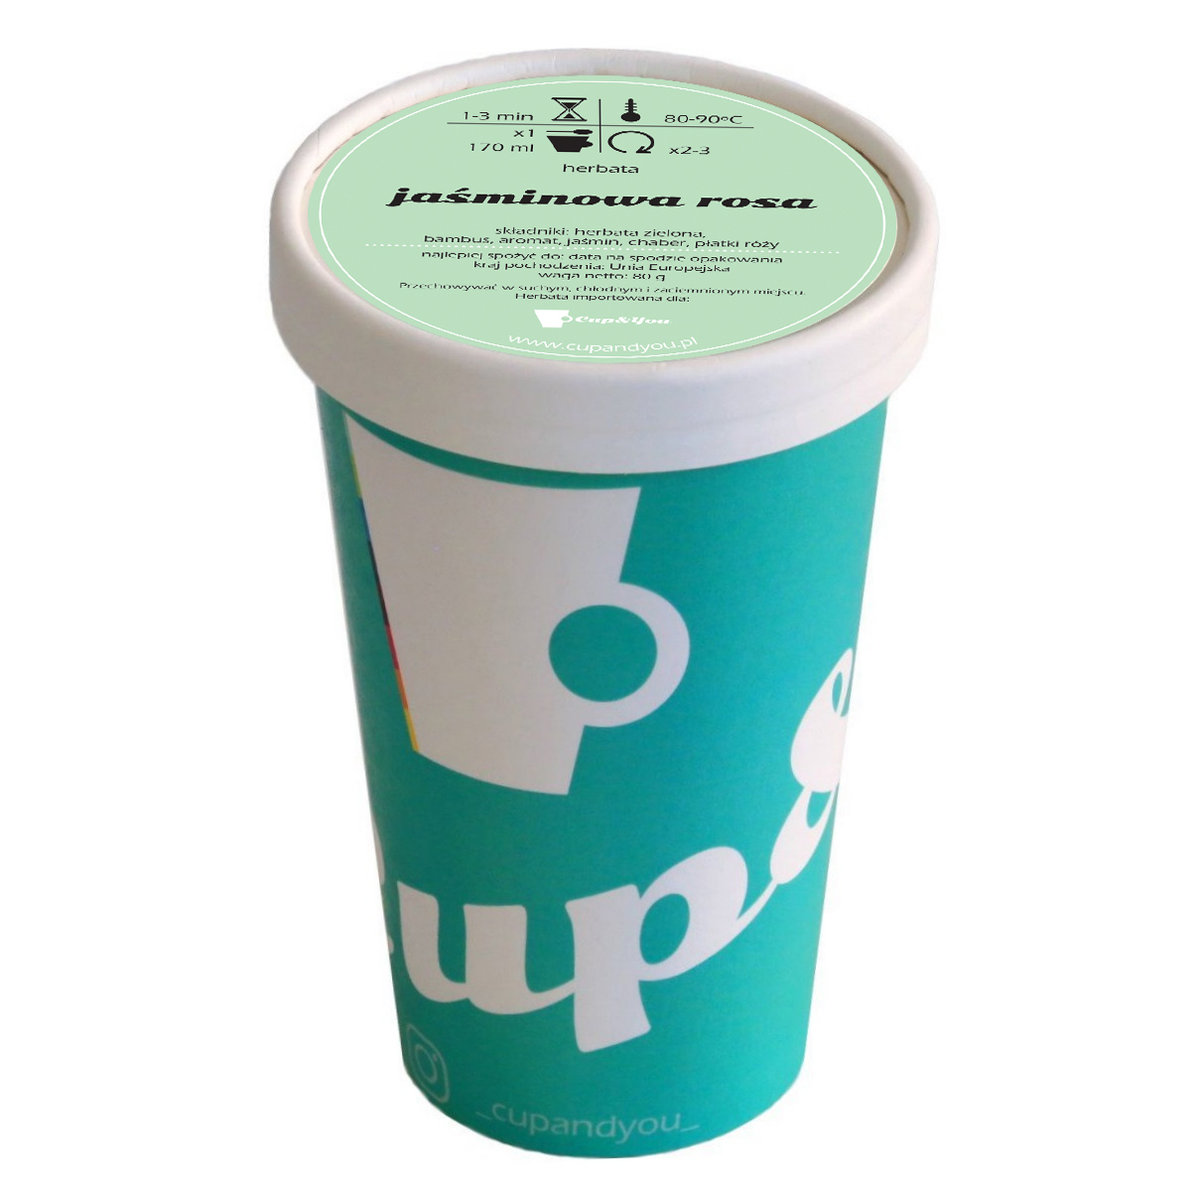 Herbata zielona smakowa CUP&YOU, jaśminowa rosa w EKO KUBKU, 100 g